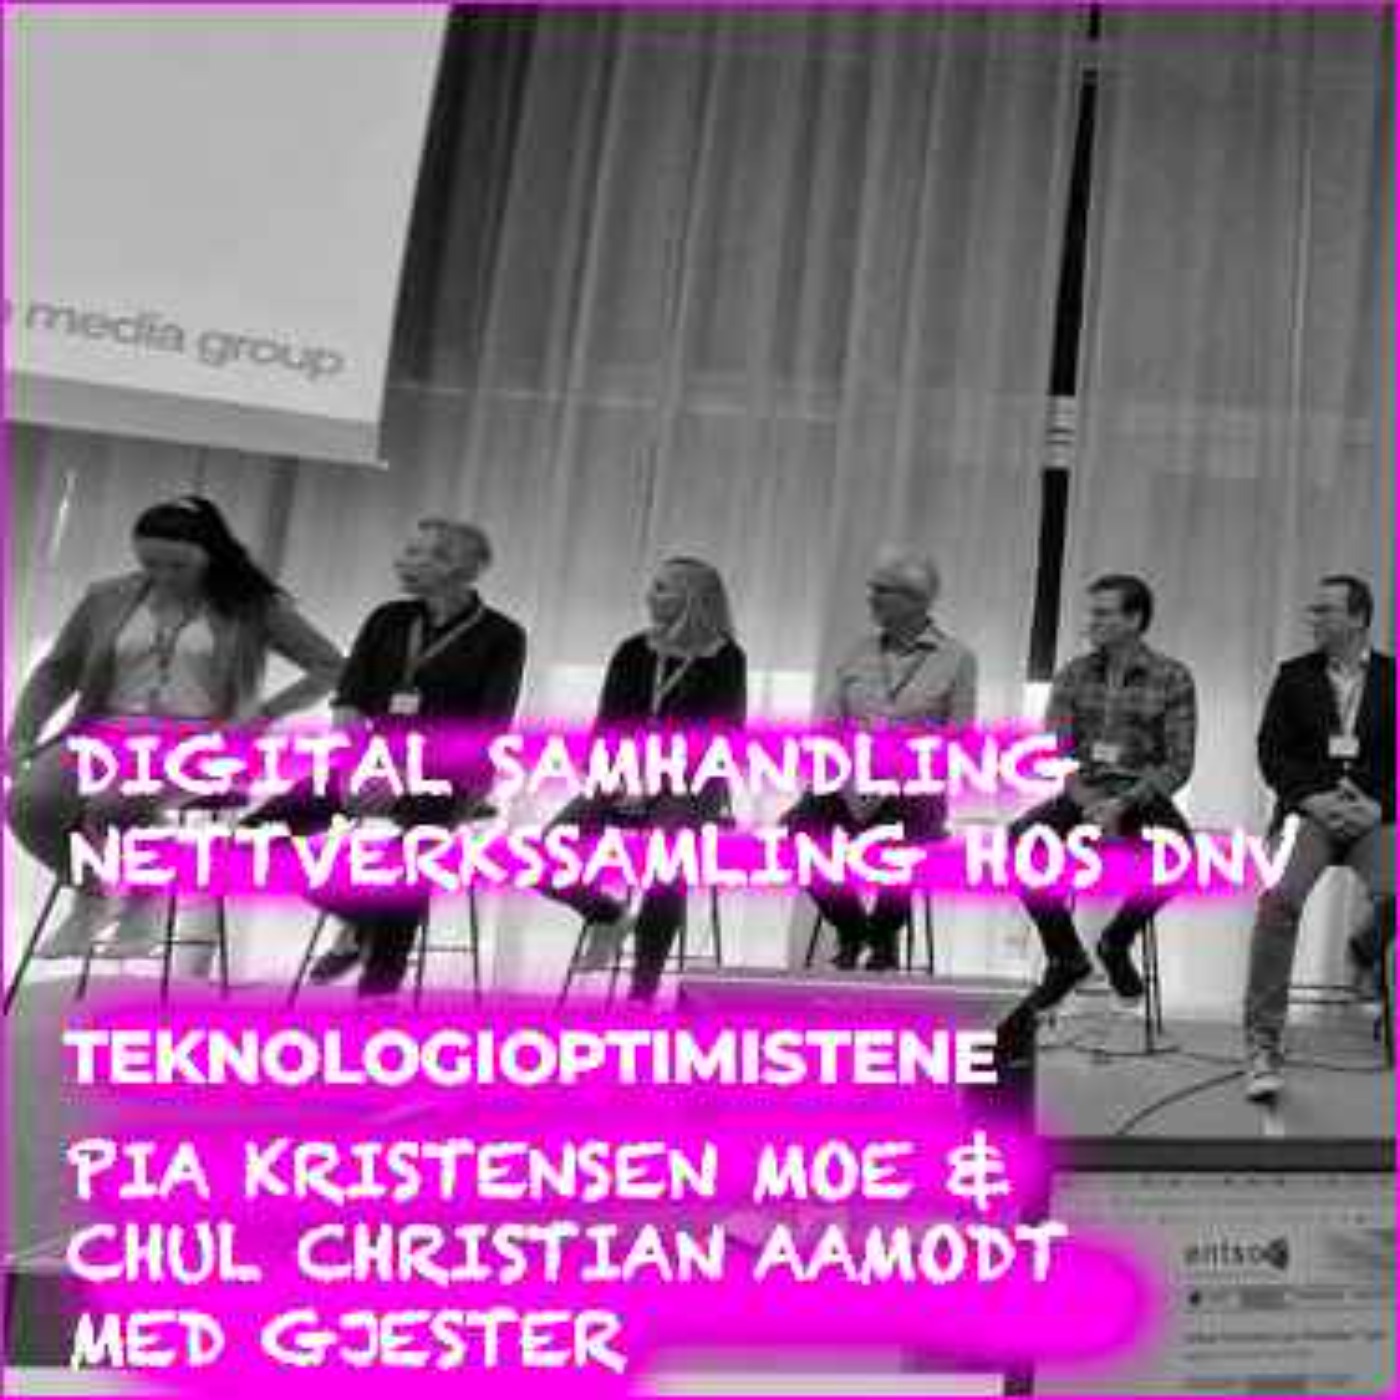 cover art for TEKNOLOGIOPTIMISTENE - Digital samhandling - Live podcast fra nettverkssamling hos DNV for teknologioptimister 